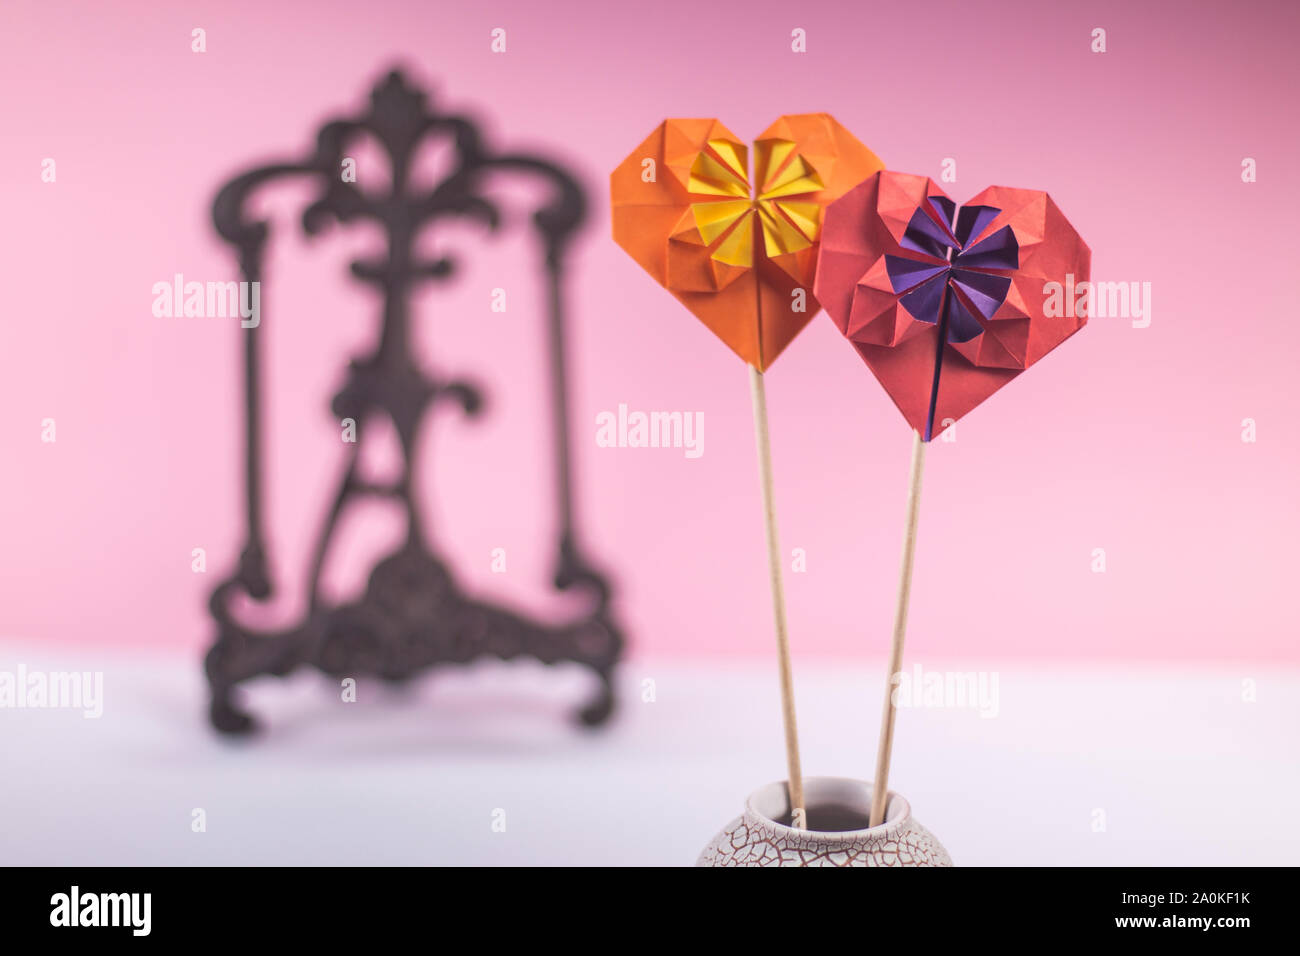 Concetto di san valentino di amore artigianale di papercraft origami predisposto carta colorata cuore close-up shot in studio Foto Stock